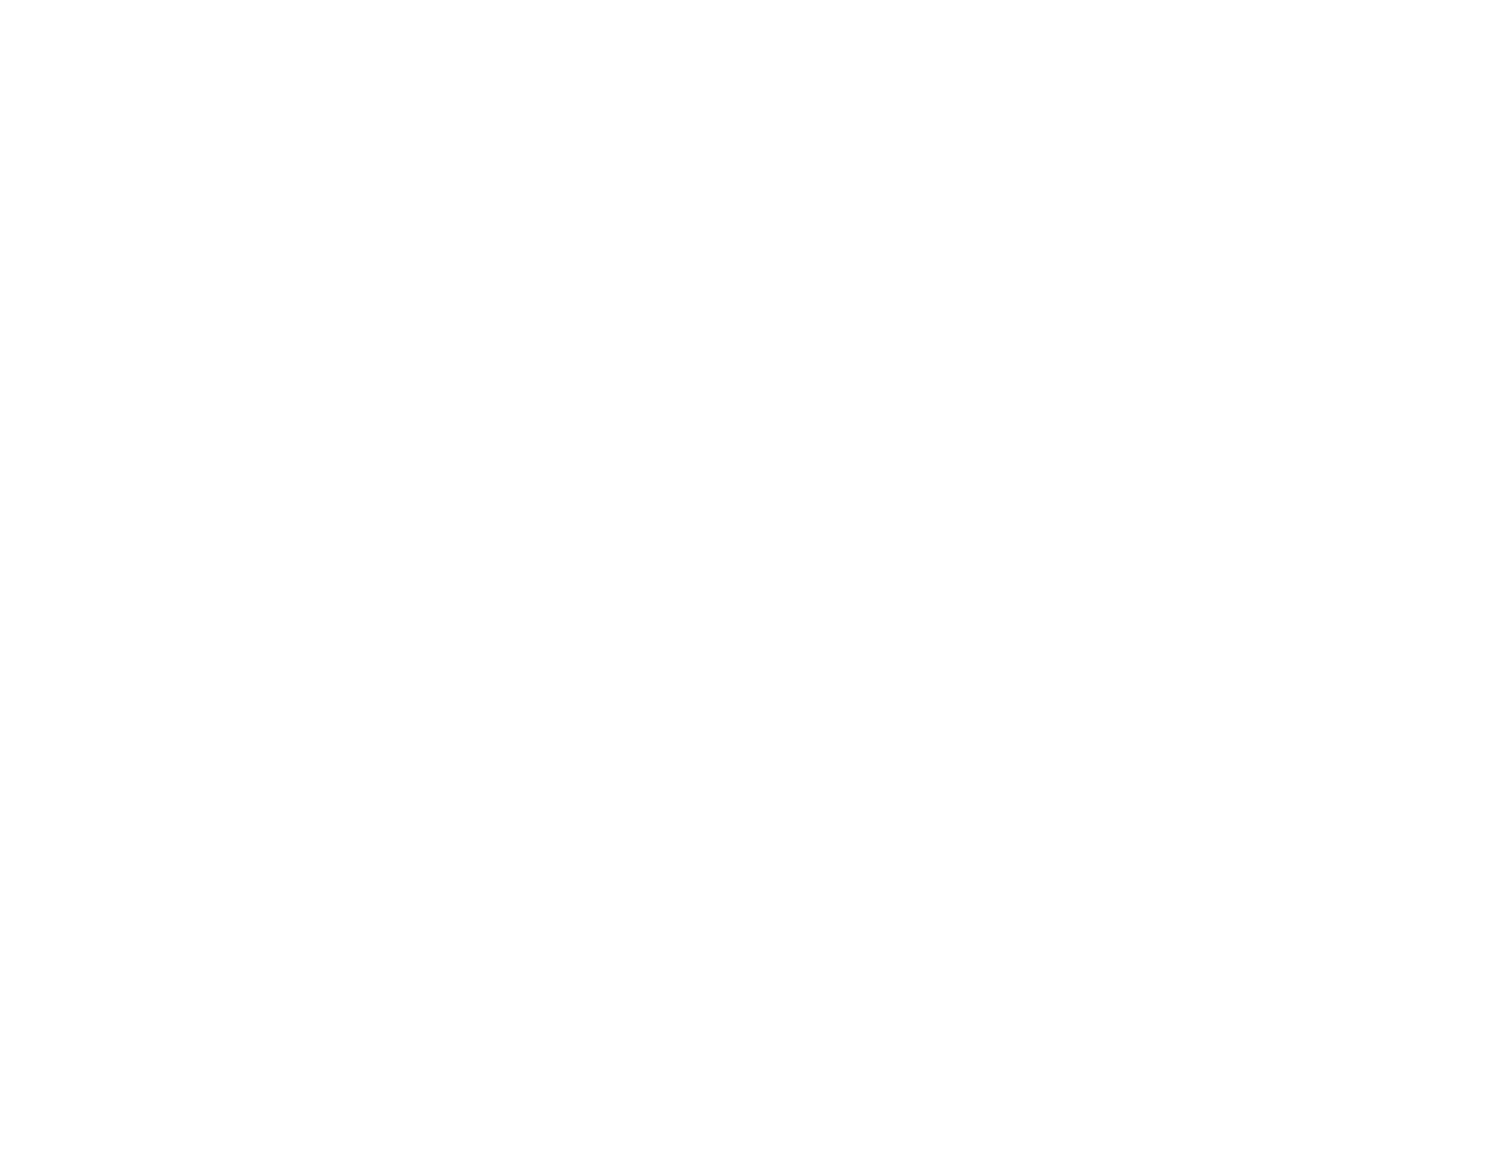 DD AirBags - AirBag per tutti gli sport d'azione